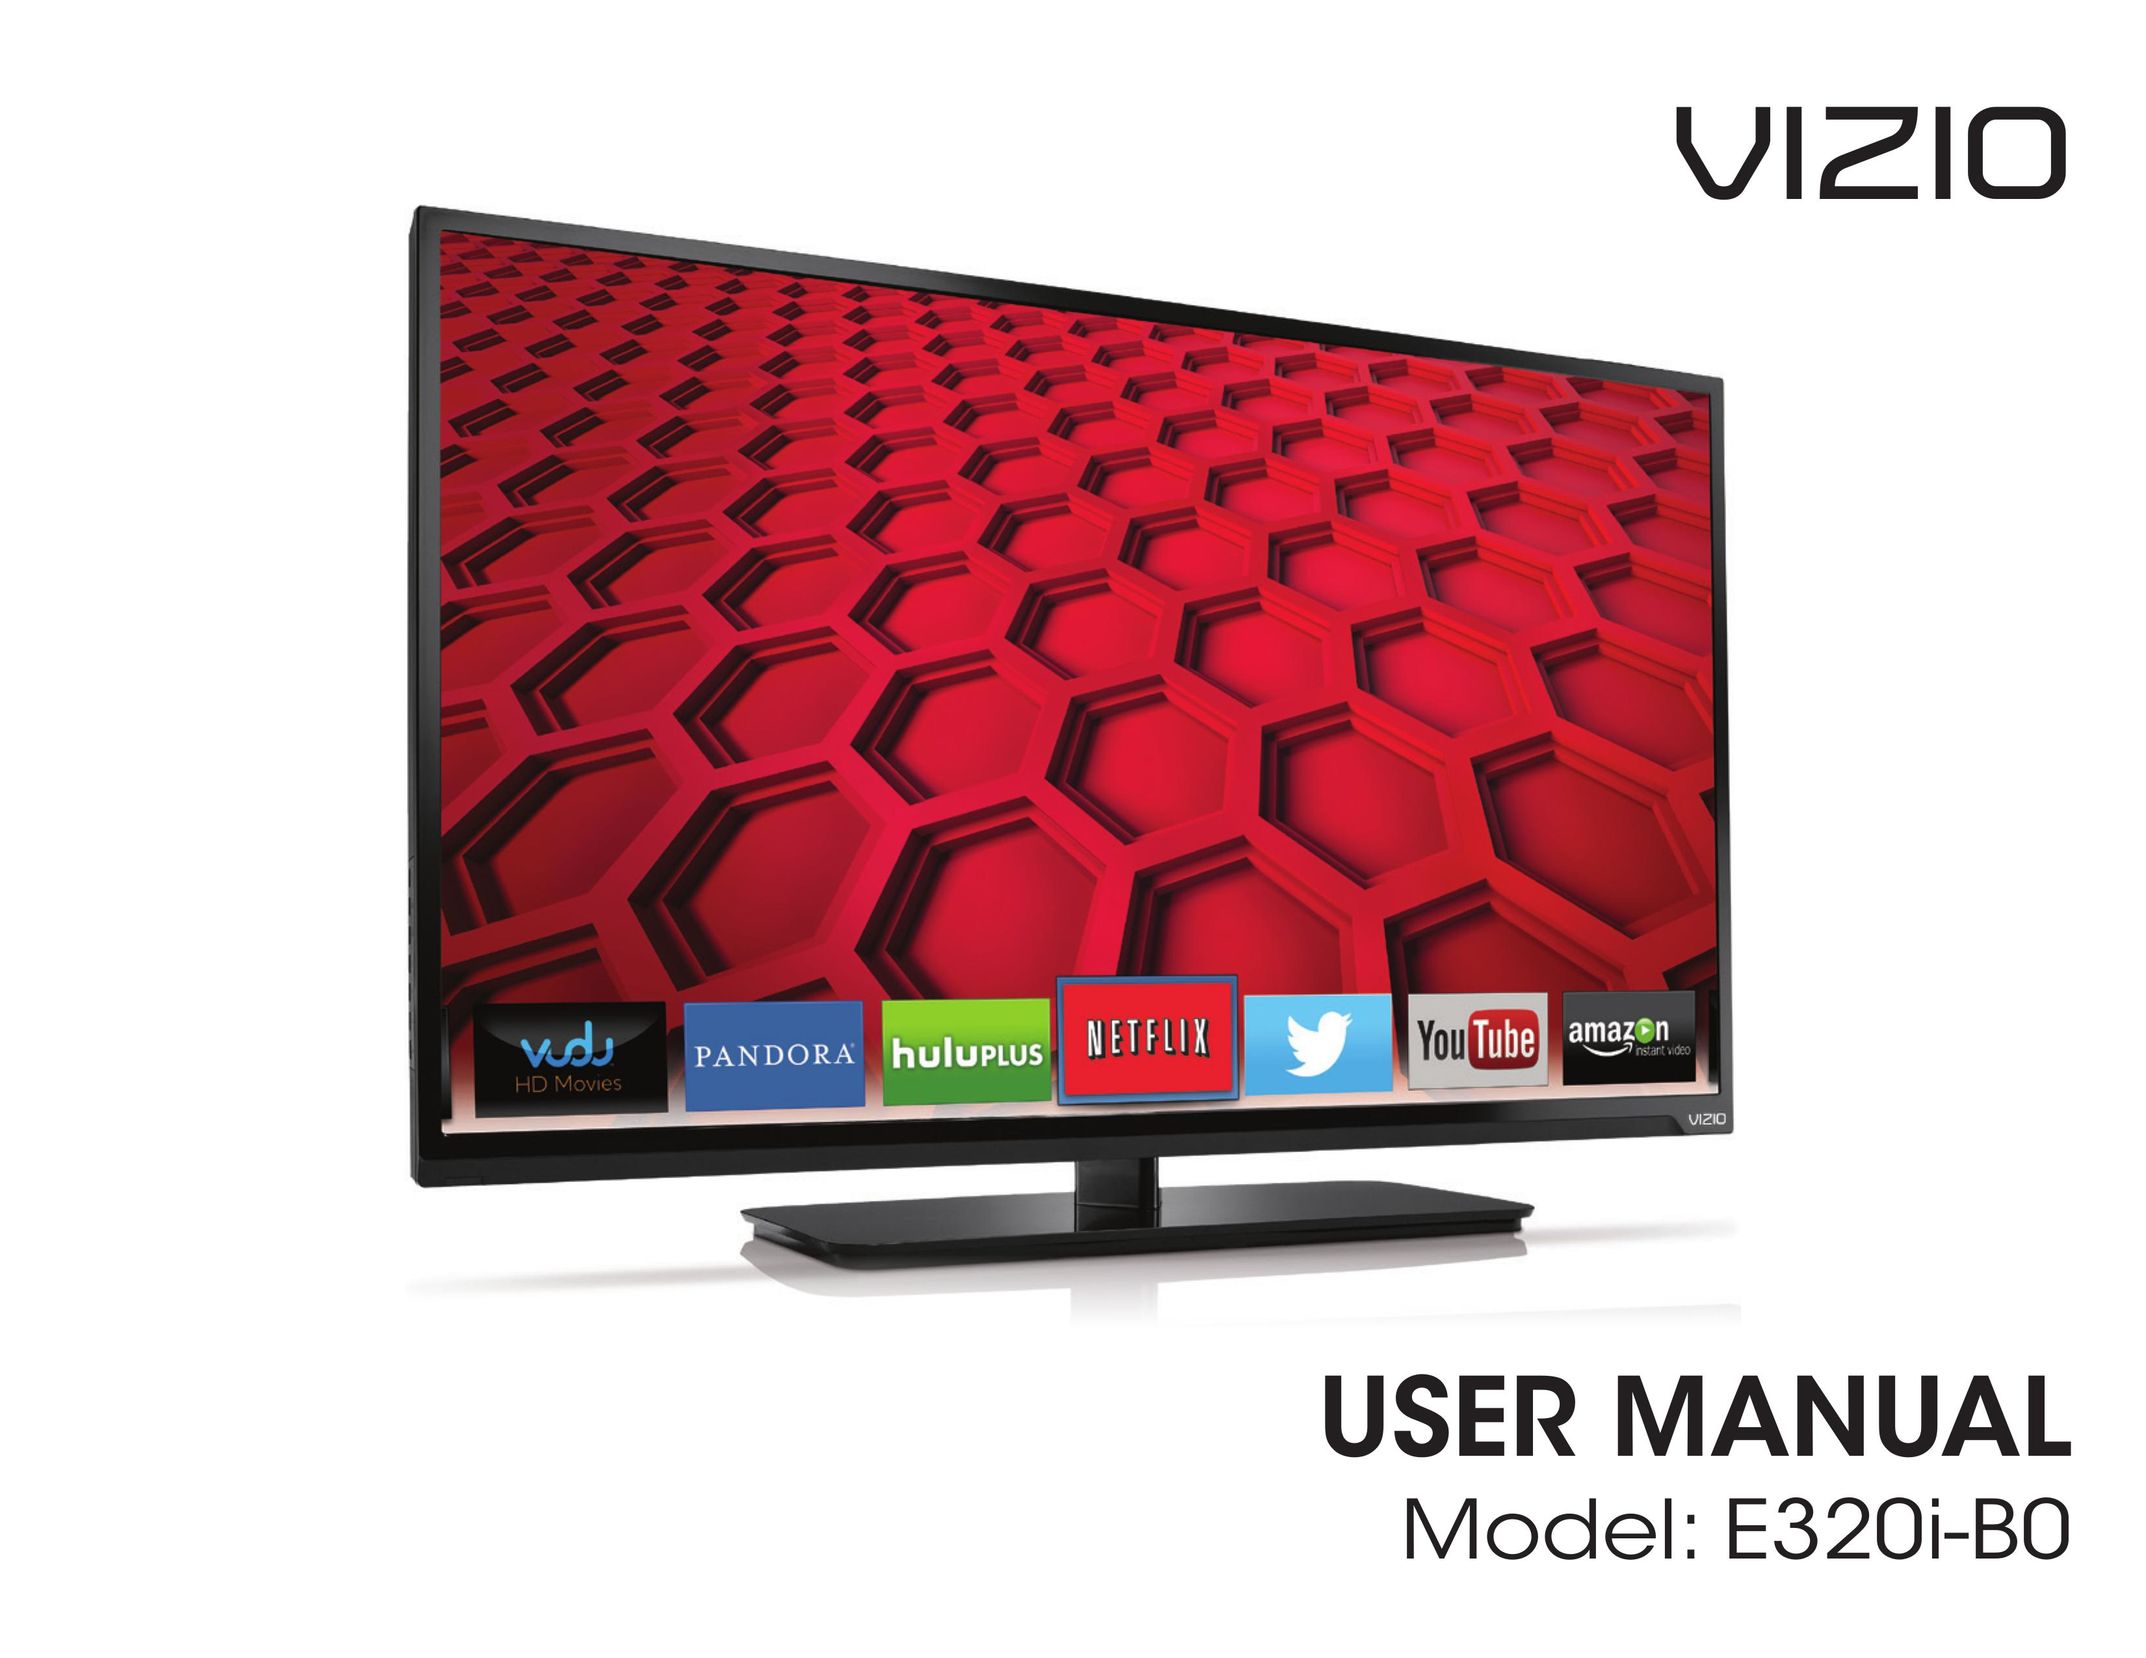 Vizio E320i-BO Car Satellite TV System User Manual